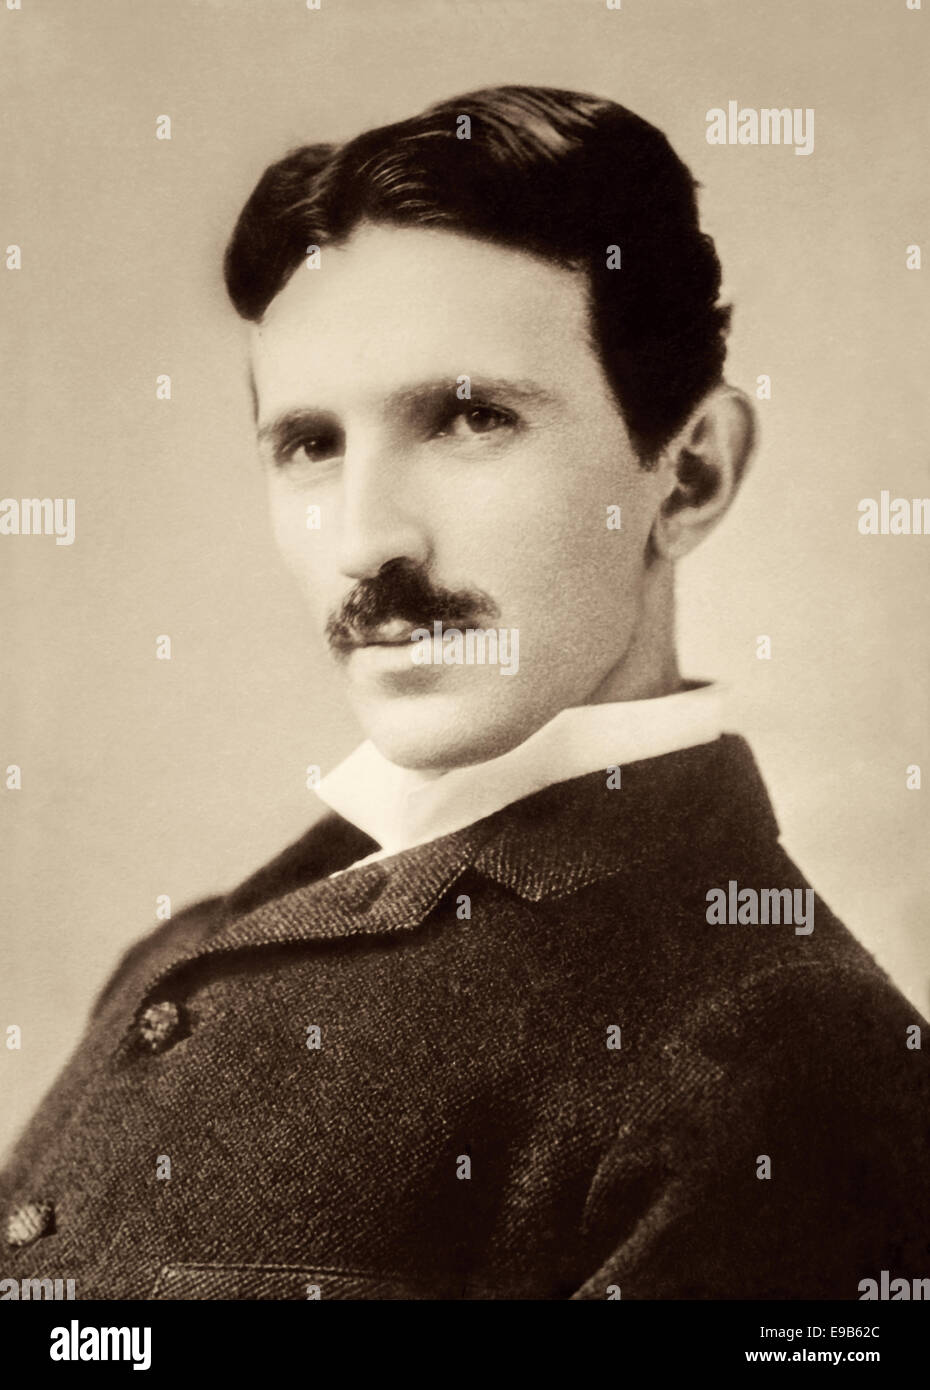 1890 Portrait de Nikola Tesla (l'âge de 34 ans), le serbe l'inventeur américain, ingénieur électricien, ingénieur mécanicien, et futuriste. Banque D'Images